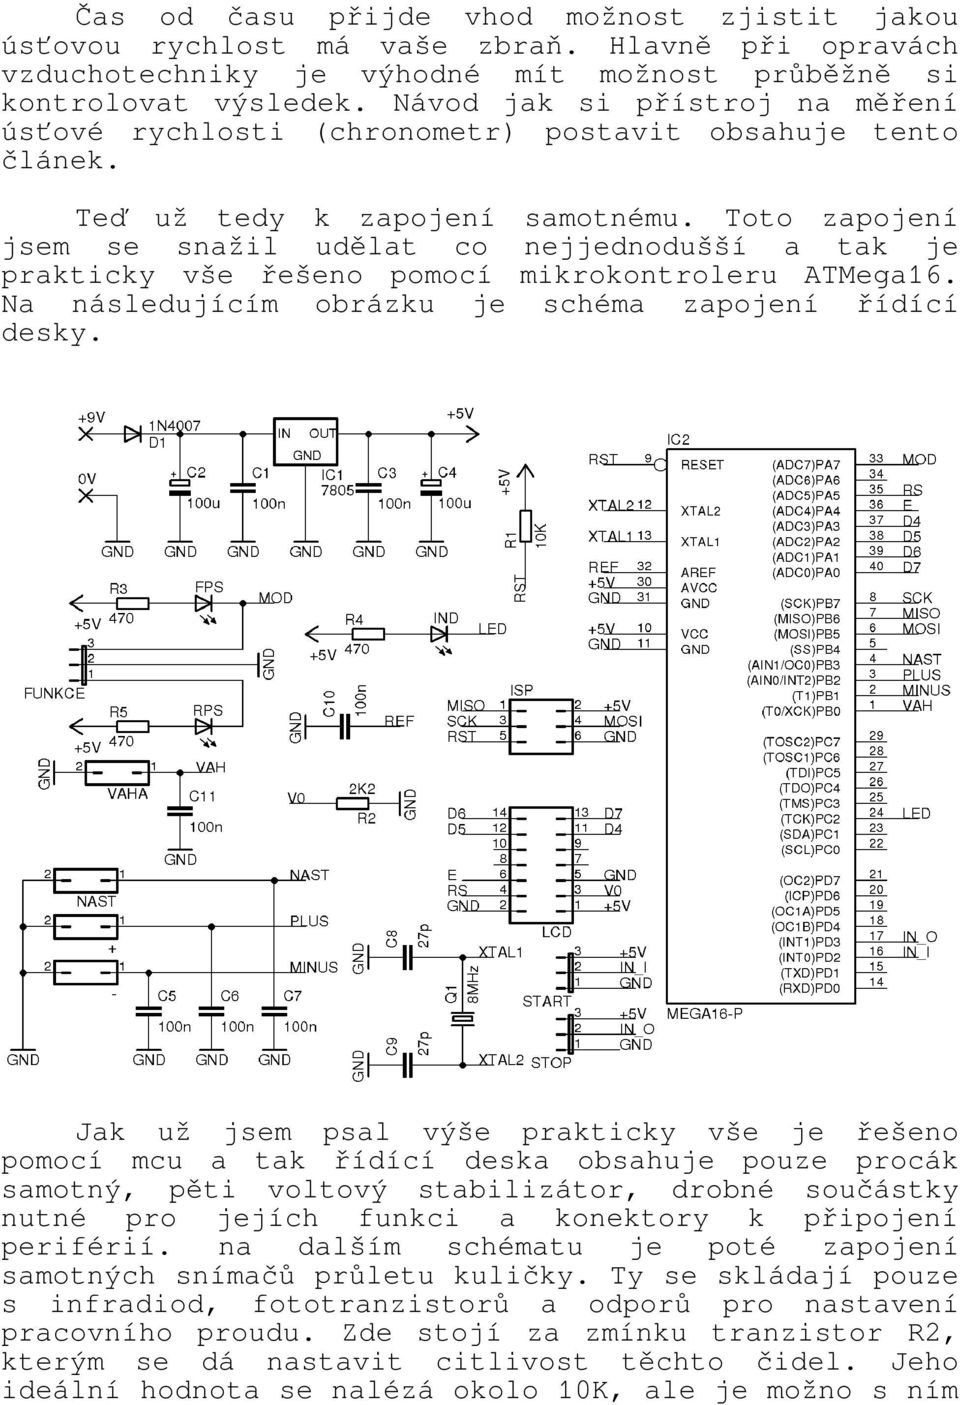 Toto zapojení jsem se snažil udělat co nejjednodušší a tak je prakticky vše řešeno pomocí mikrokontroleru ATMega16. Na následujícím obrázku je schéma zapojení řídící desky.